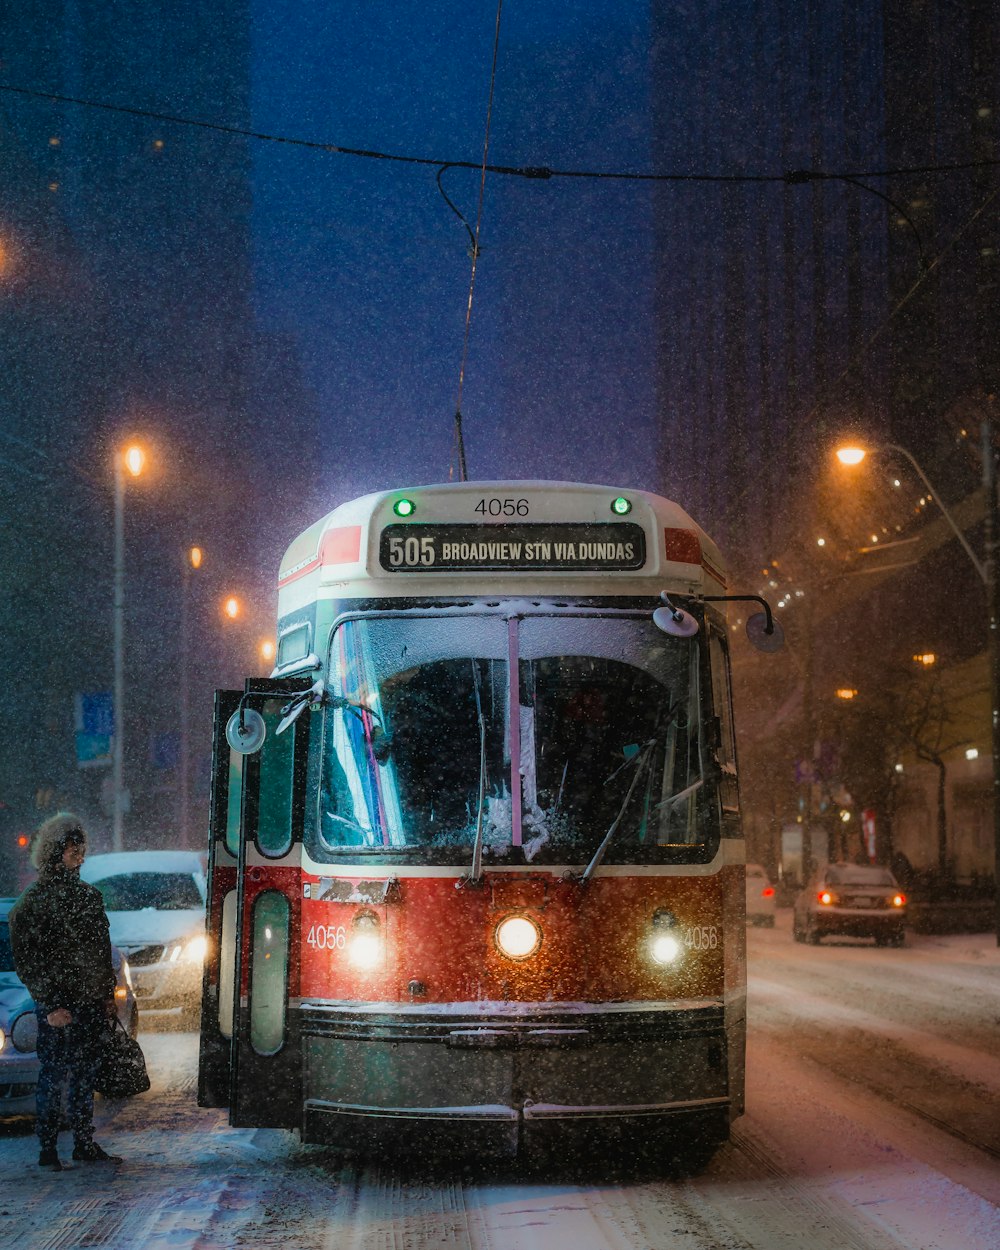 ônibus vermelho e branco na estrada durante a noite